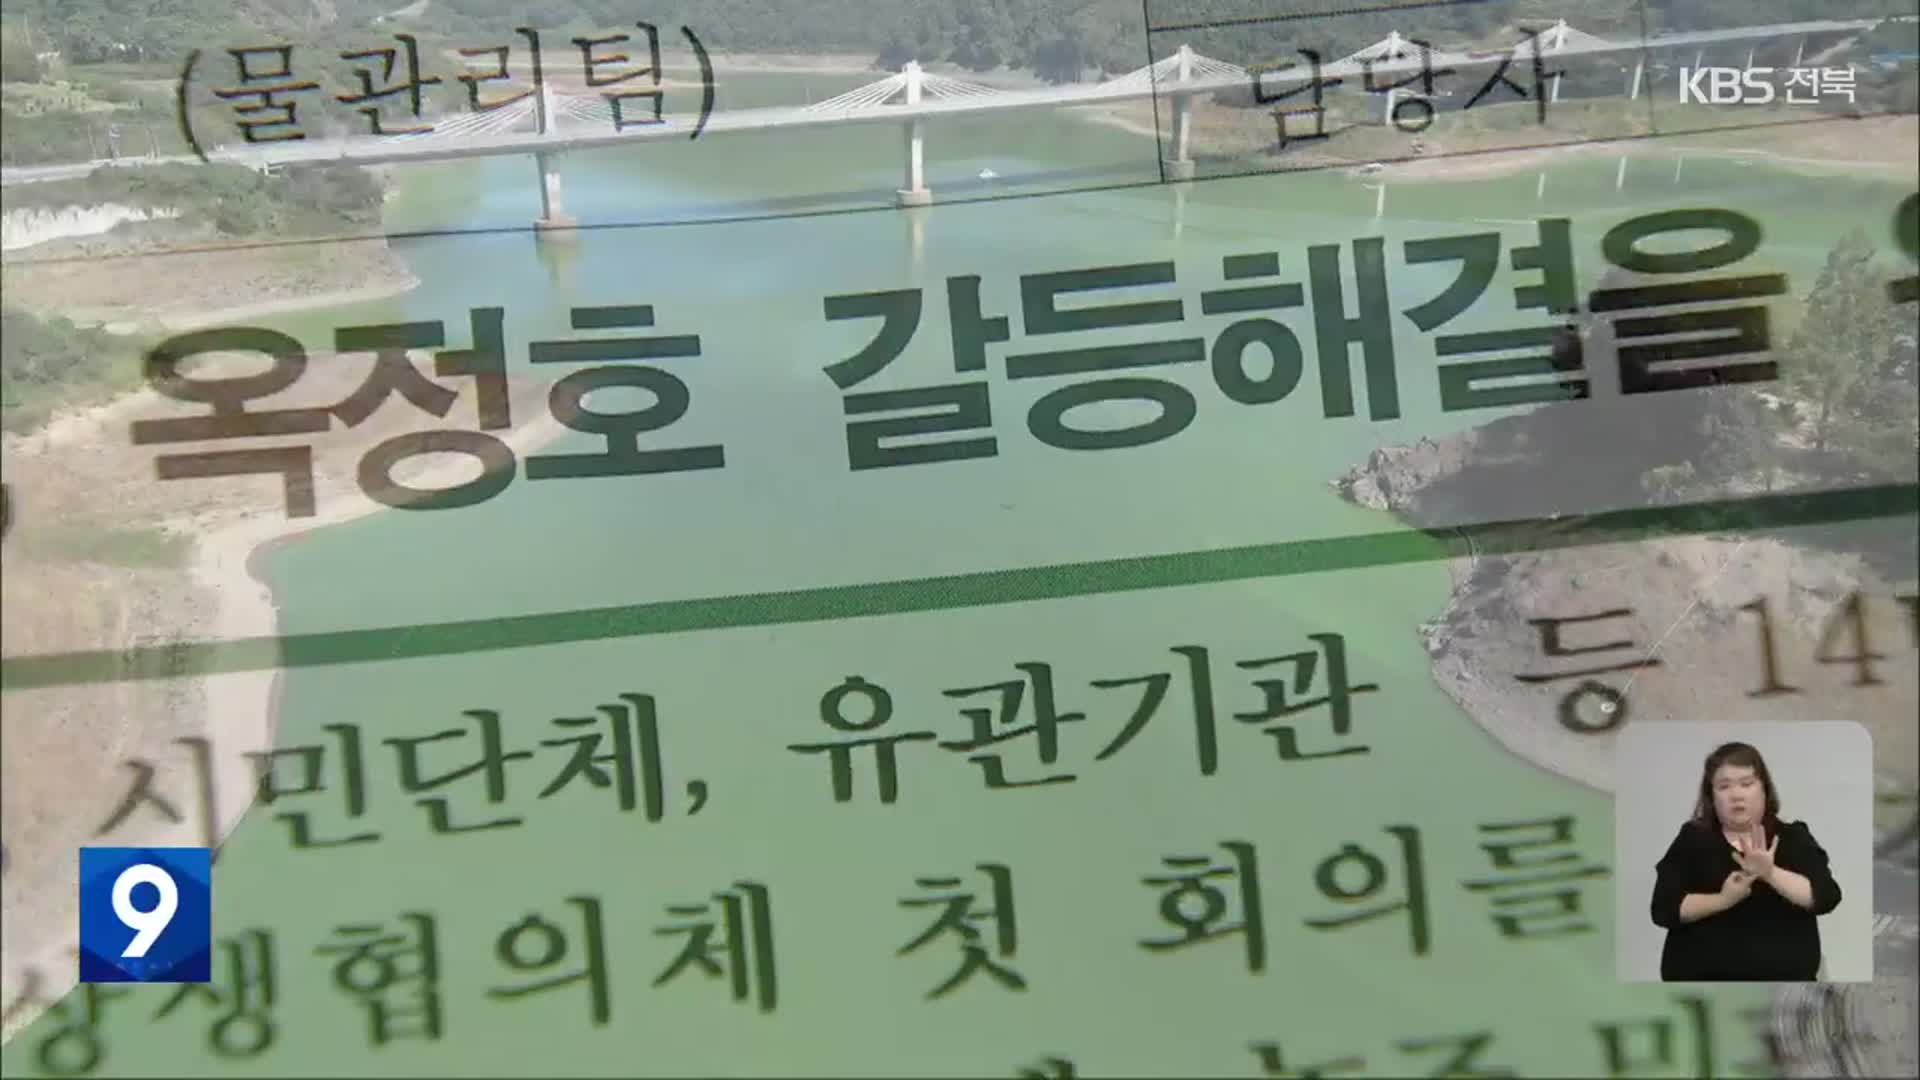 ‘옥정호 상생협의체’ 첫발…다수결 방식 논란